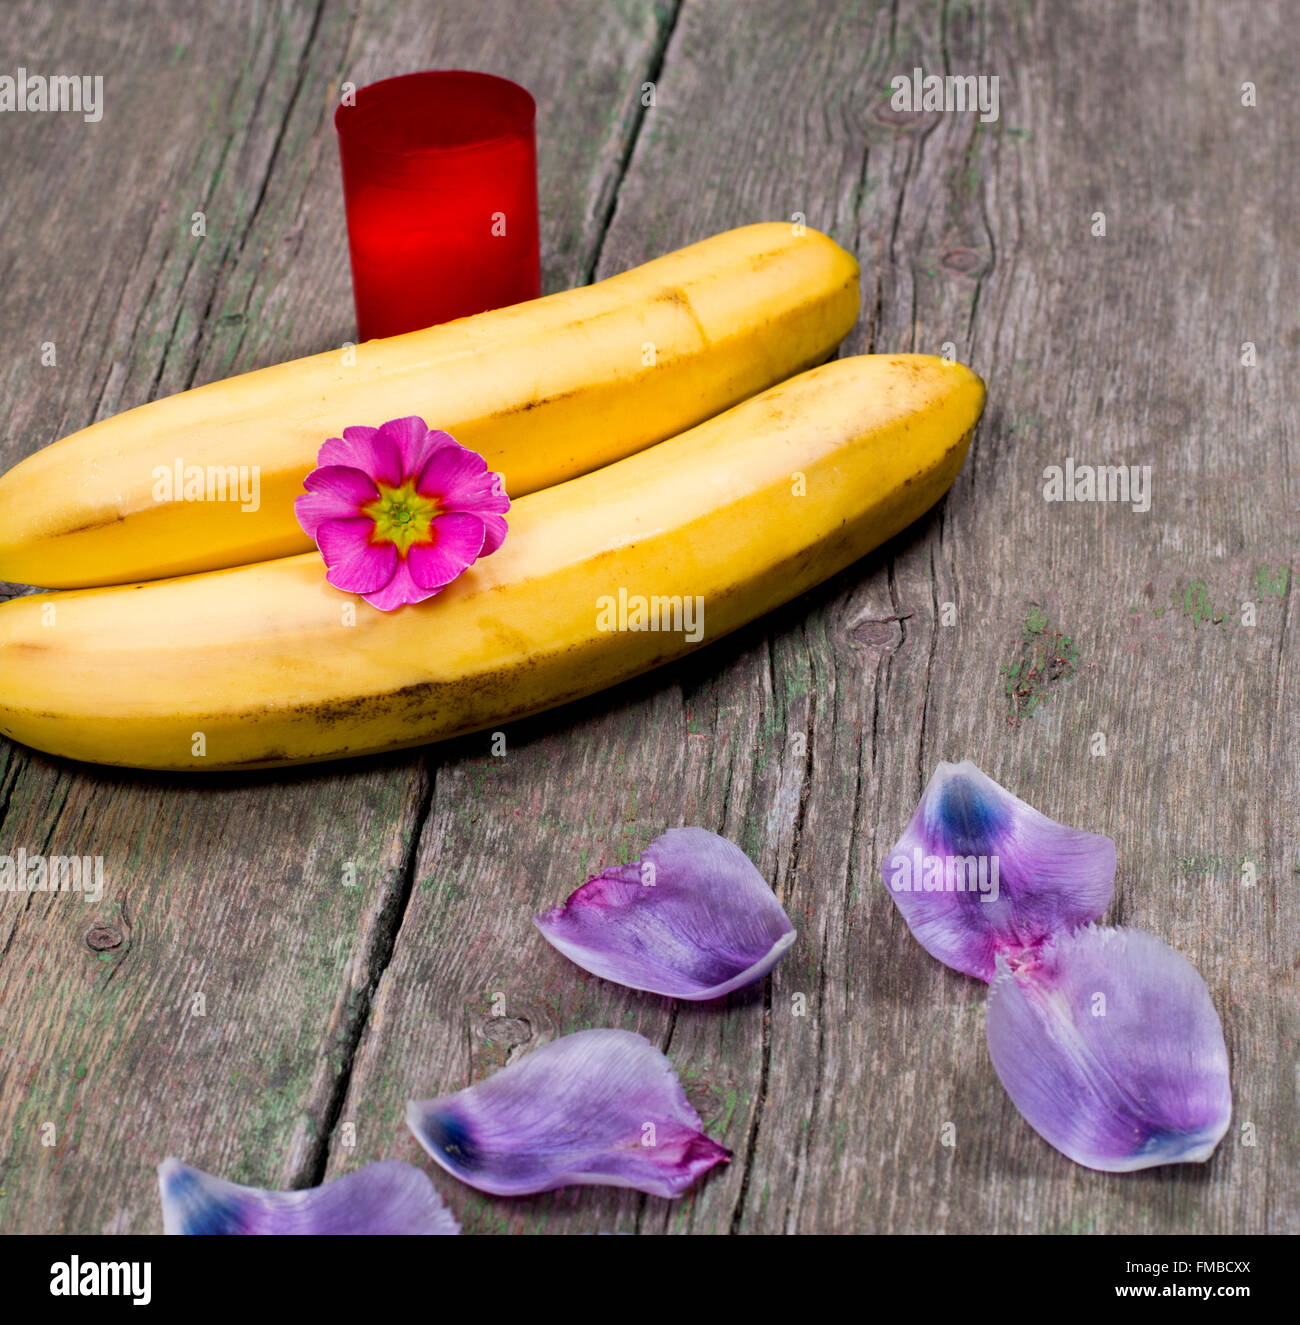 Bougie, deux bananes, fleurs et pétales de lilas Banque D'Images